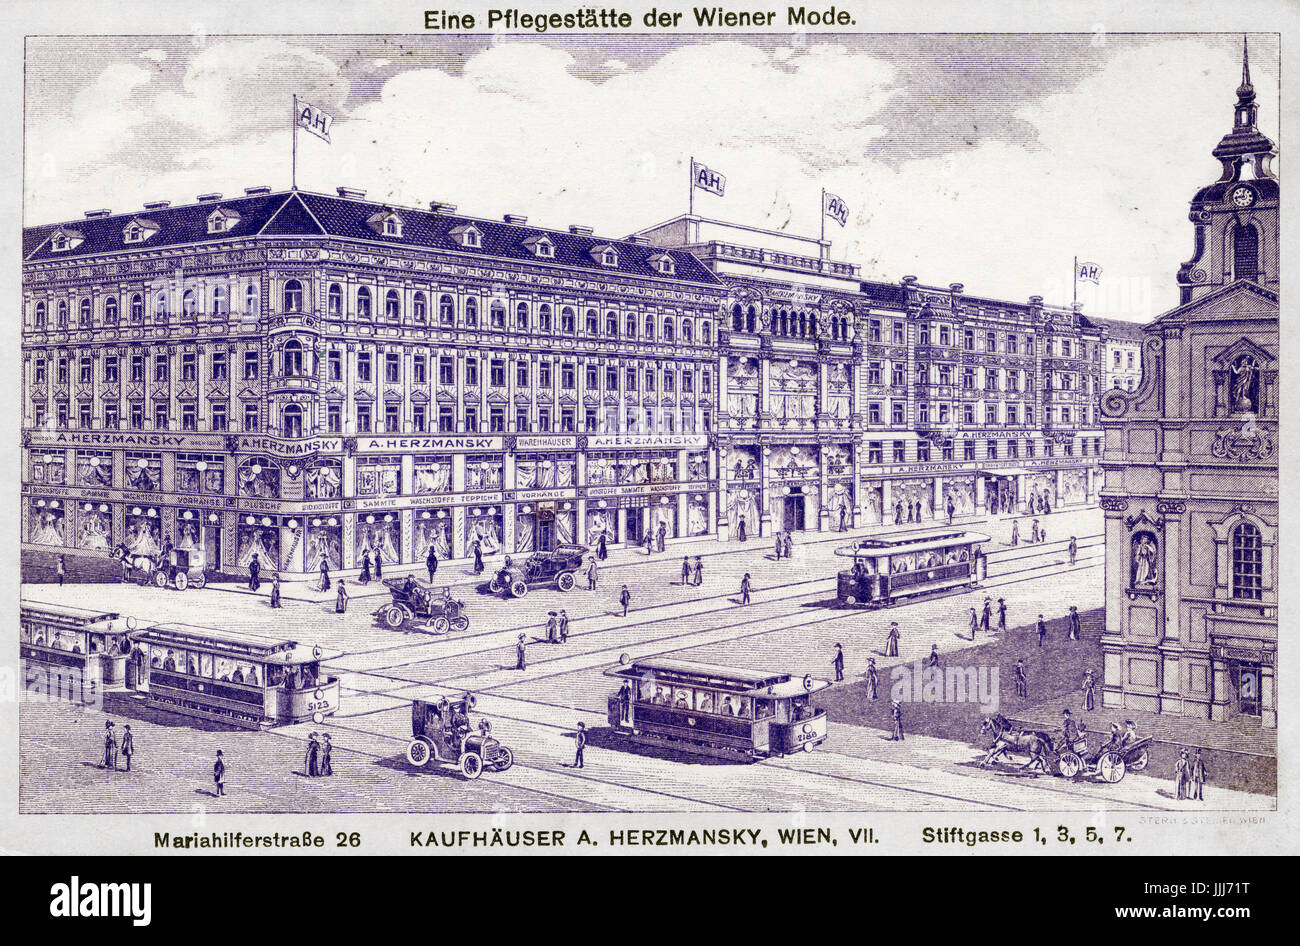 Viennese department store - A. Herzmansky in early 1900s. Caption reads: Eine Pflegestatte der Wiener Mode (Viennese fashion). Mariahilferstrasse 26, Kaufhauser A Herzmansky, Wien VII Stock Photo